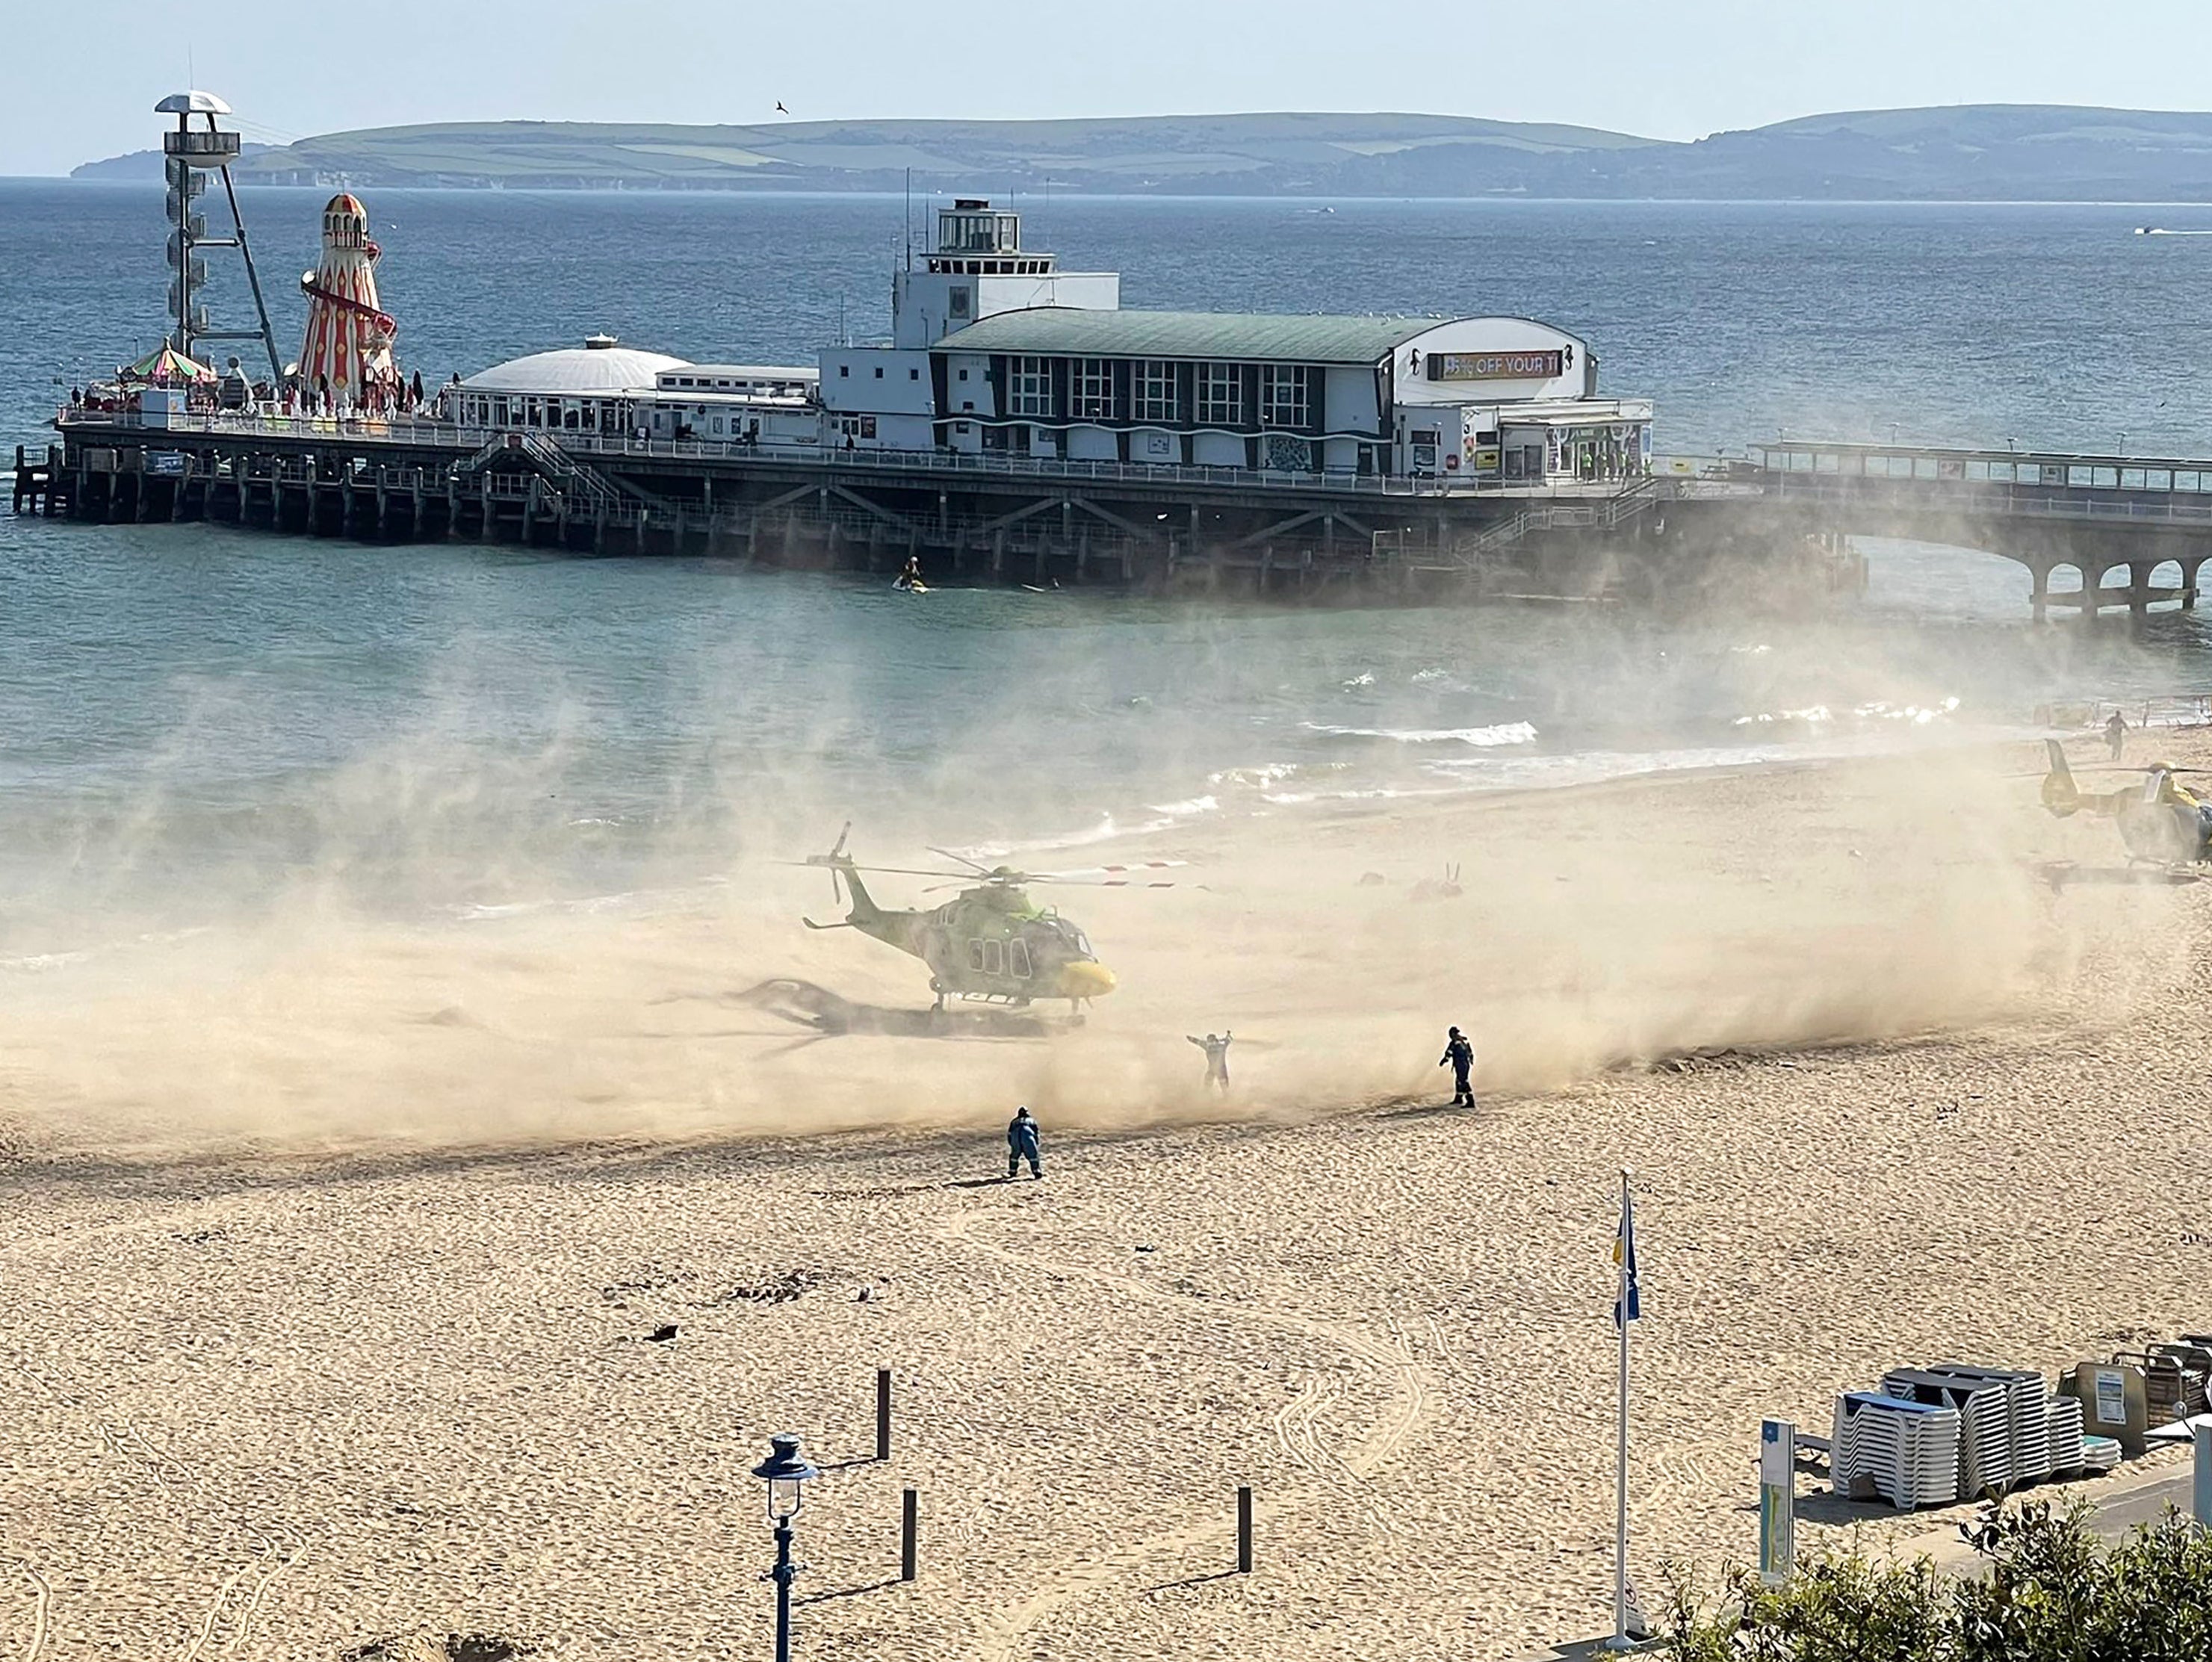 Air ambulances land on the beach